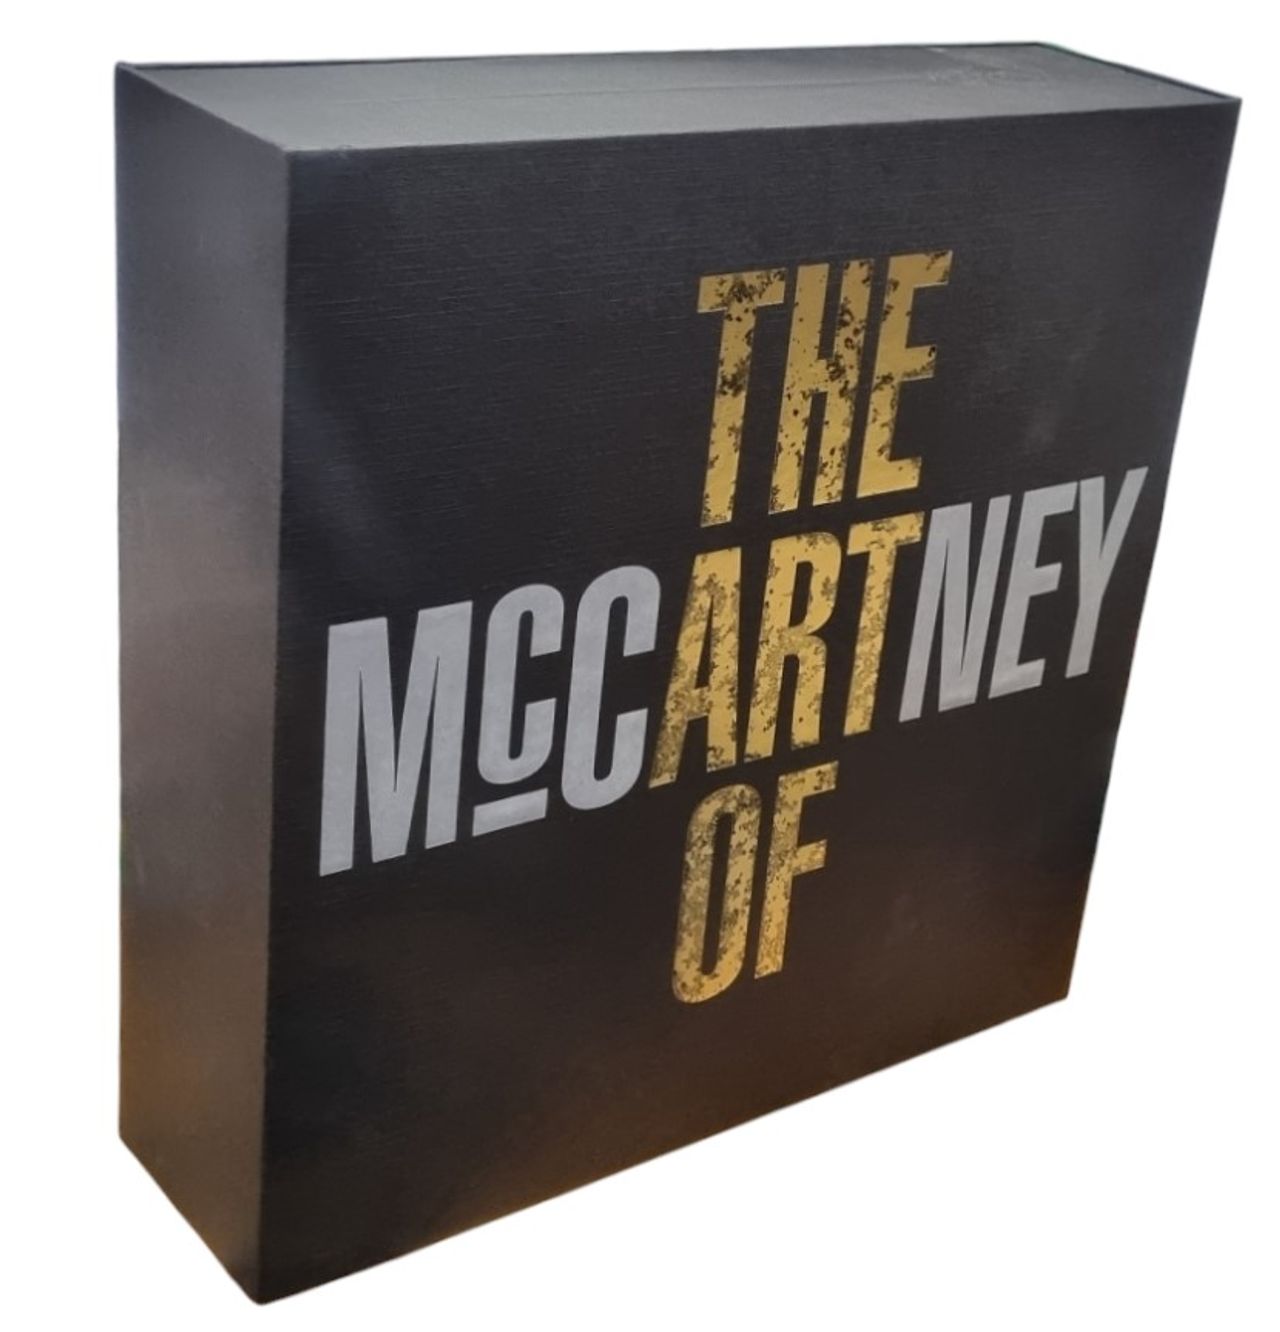 Paul McCartney and Wings The Art Of McCartney - 180 Gram Deluxe UK Vin ...